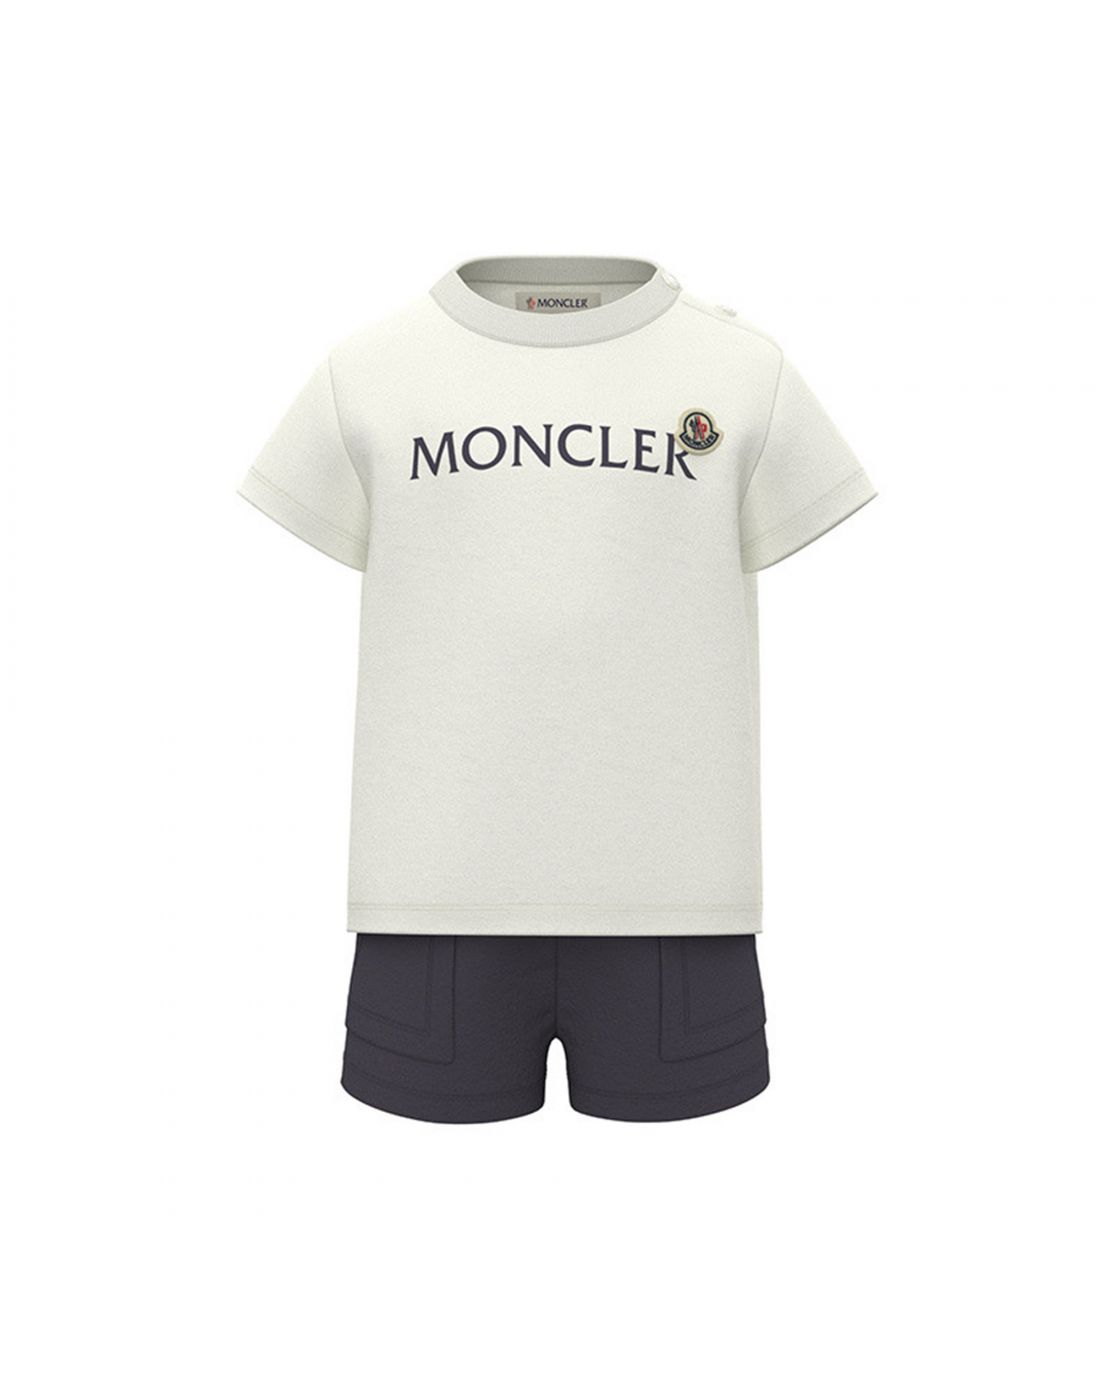 Moncler Baby Set